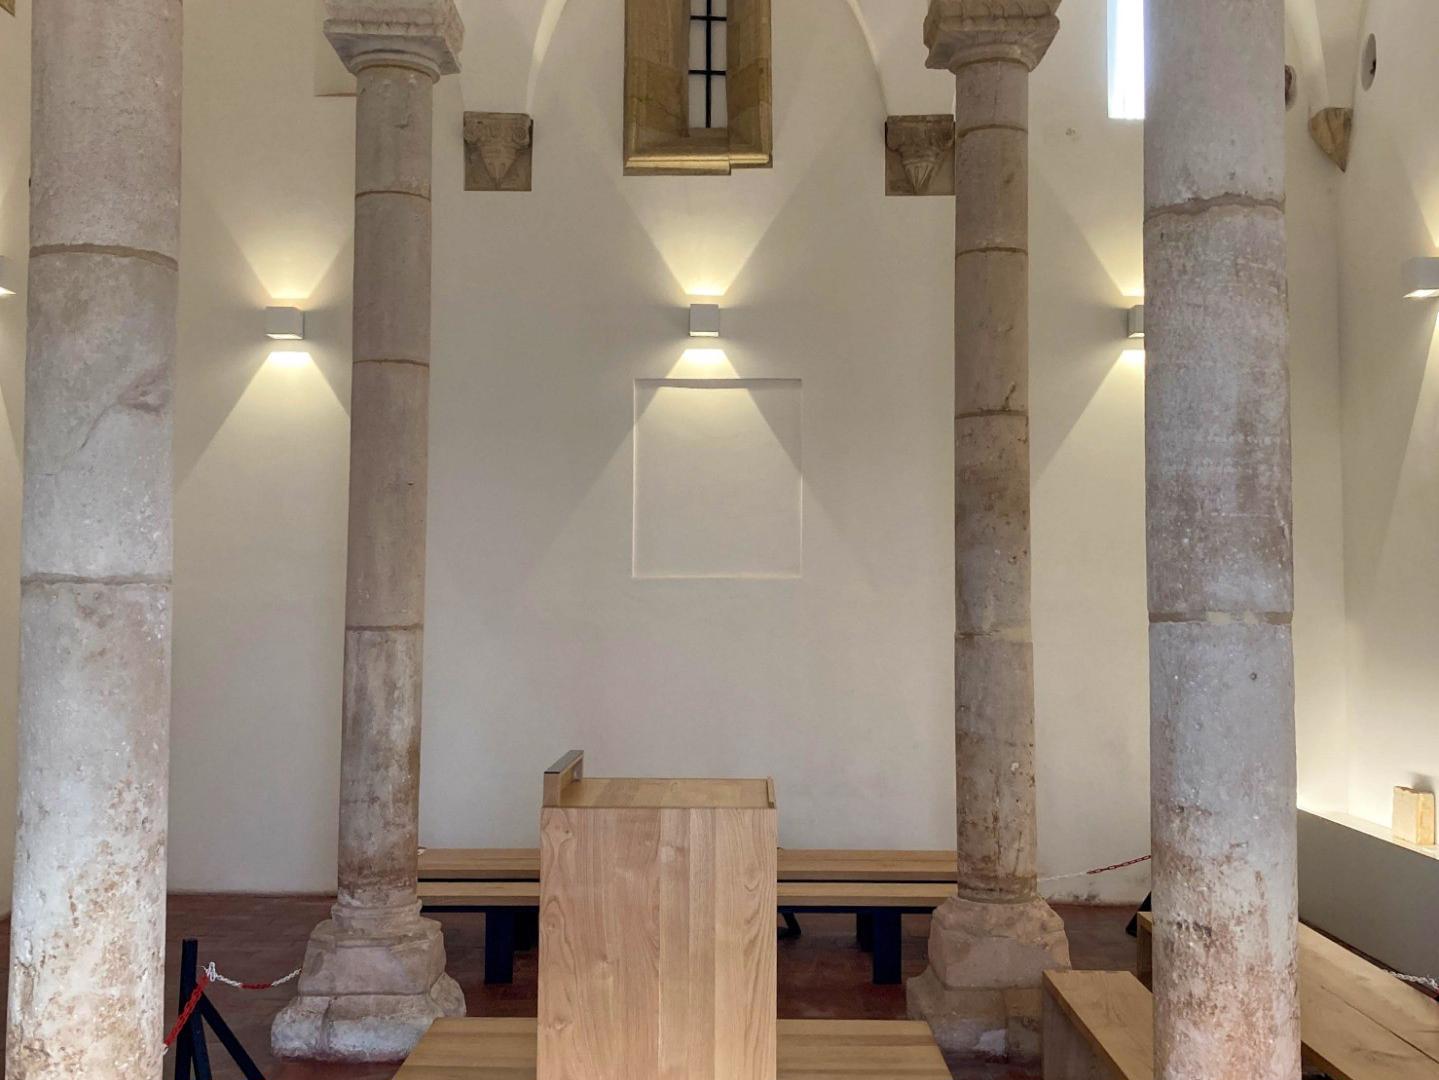 Sinagoga - A Sinagoga de Tomar foi construída entre 1430 e 1460, por ordem do Infante D. Henrique, que sempre manteve uma relação de proximidade e mesmo de proteção para com a comunidade judaica, que contribuía generosamente para a grande empresa dos Descobrimentos.